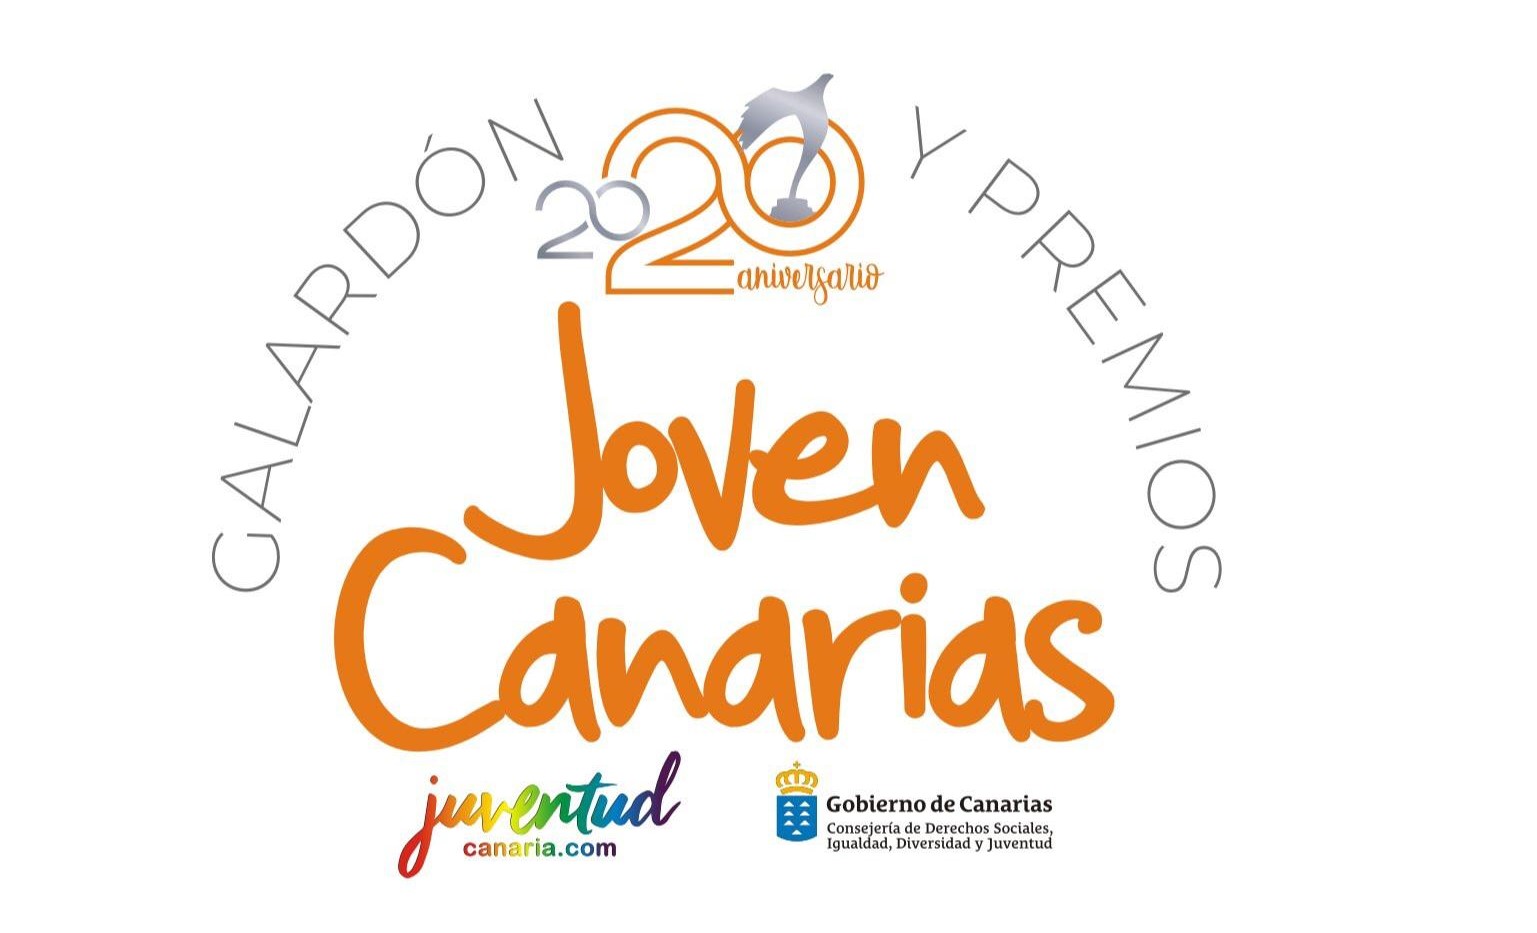 Galardón y Premios Joven Canarias